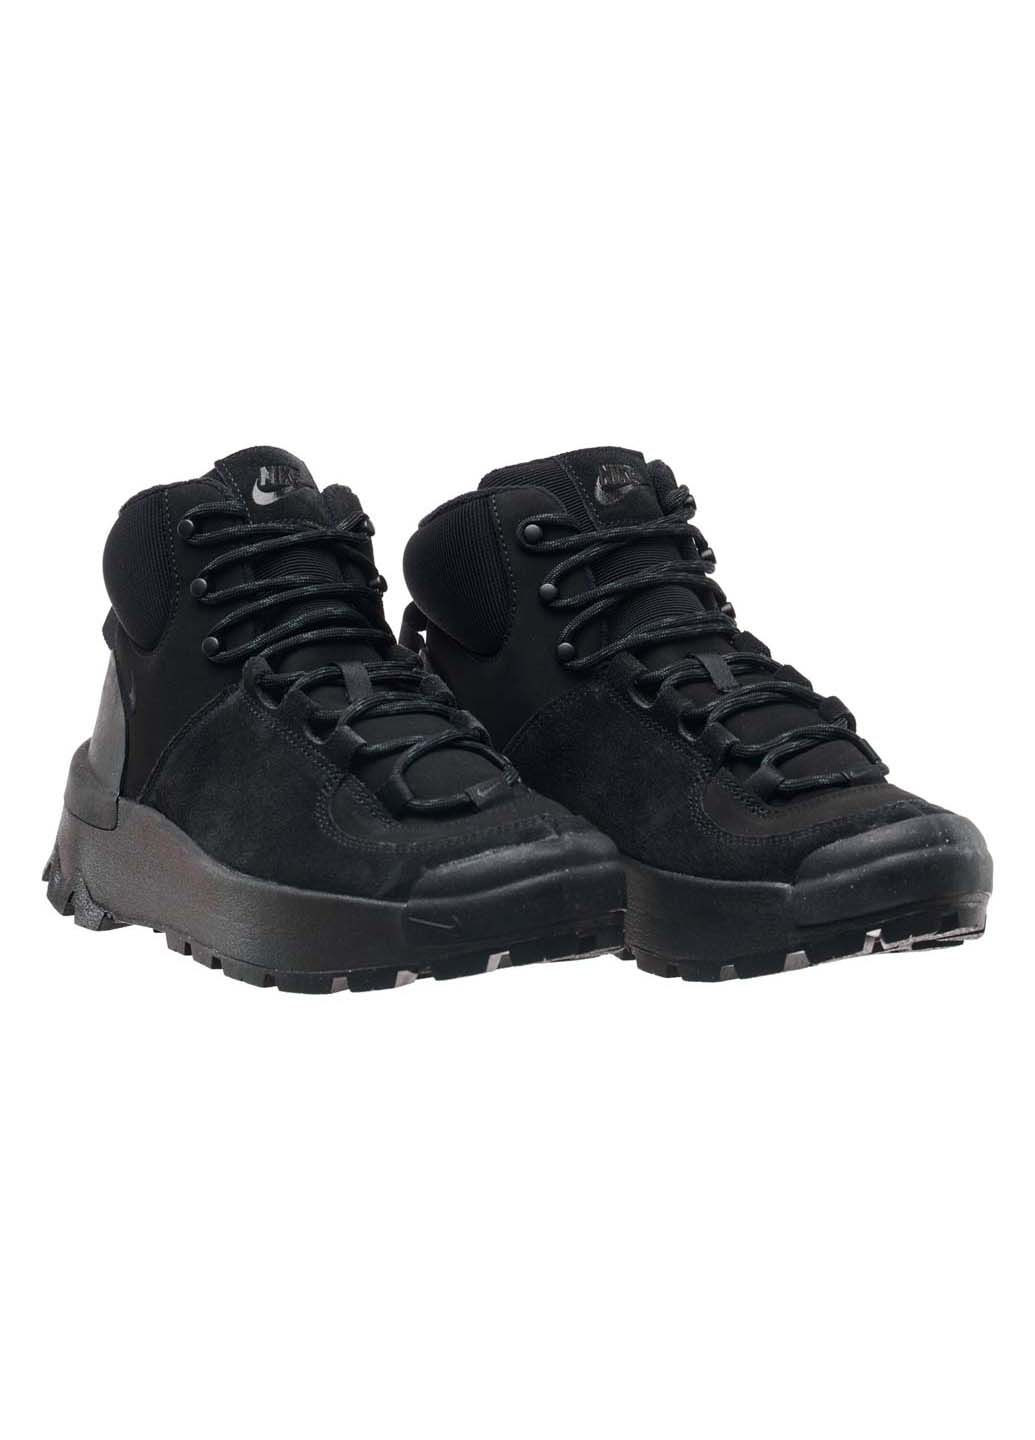 Чорні осінні кросівки жіночі city classic boot Nike